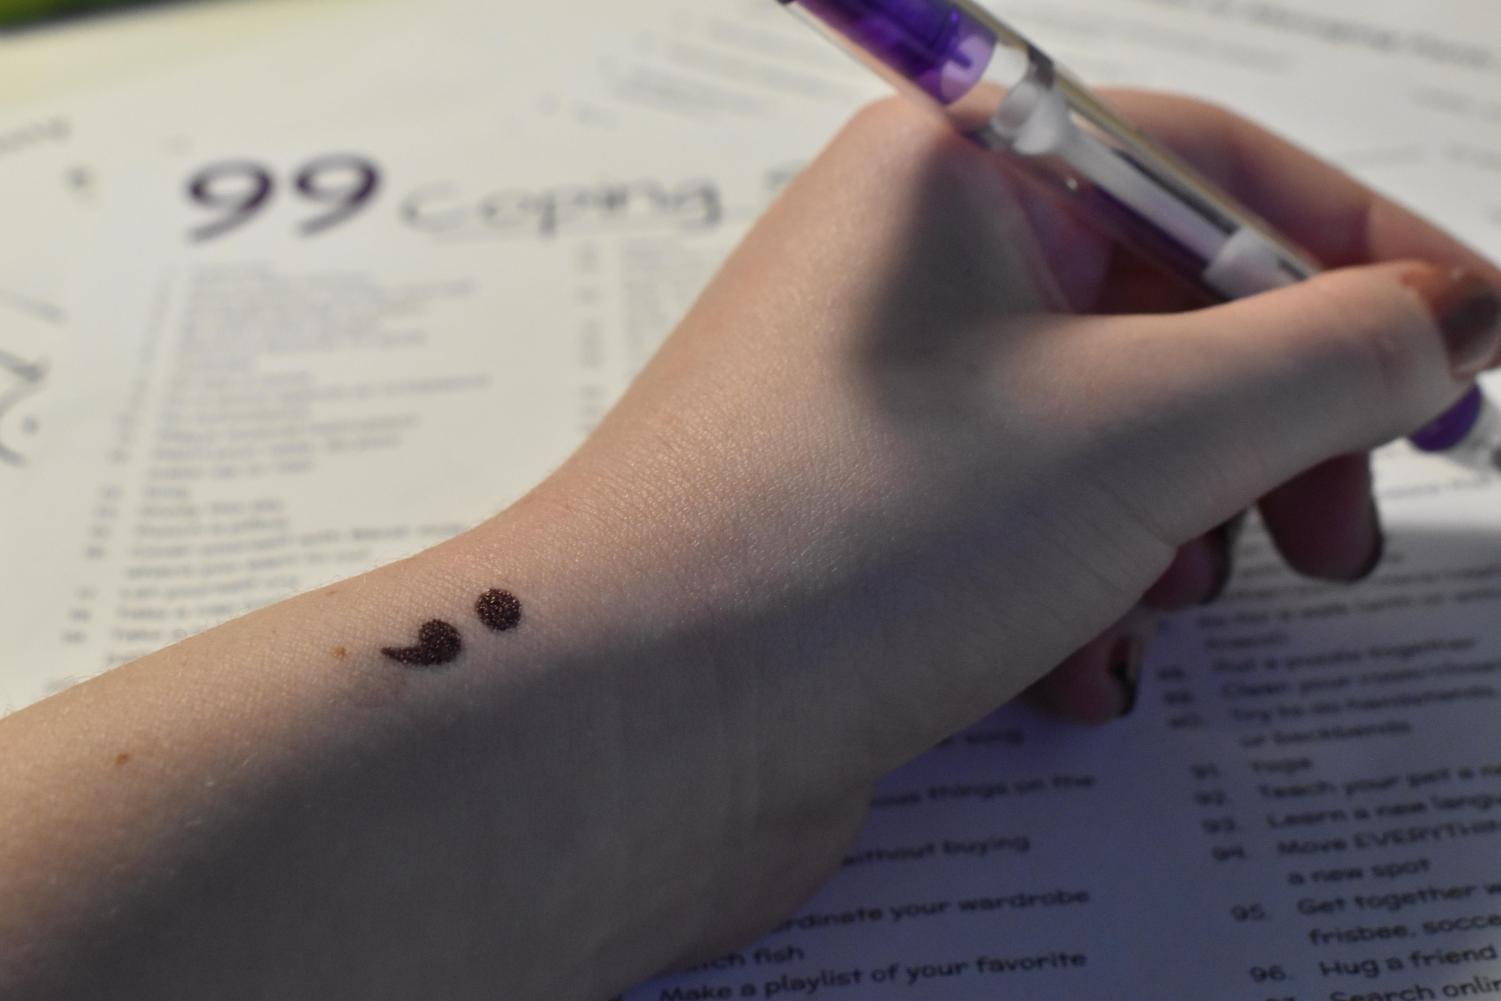 semicolon tattoo the tattoo i want to have❤️#4u #fyp | TikTok